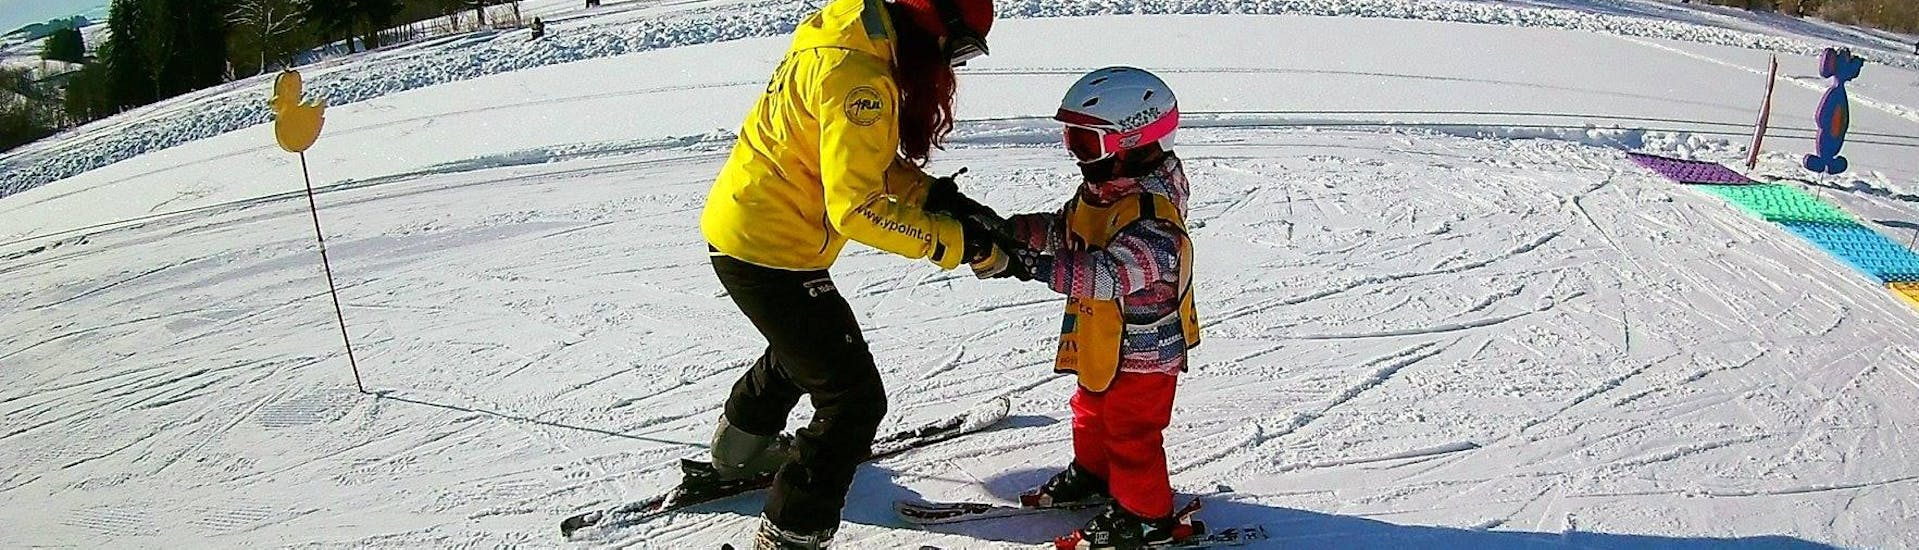 Een skileraar van Skischool Yellow Point Špindlerův Mlýn leert een meisje de sneeuwploeg skiën tijdens privé skilessen voor kinderen en tieners van alle leeftijden.